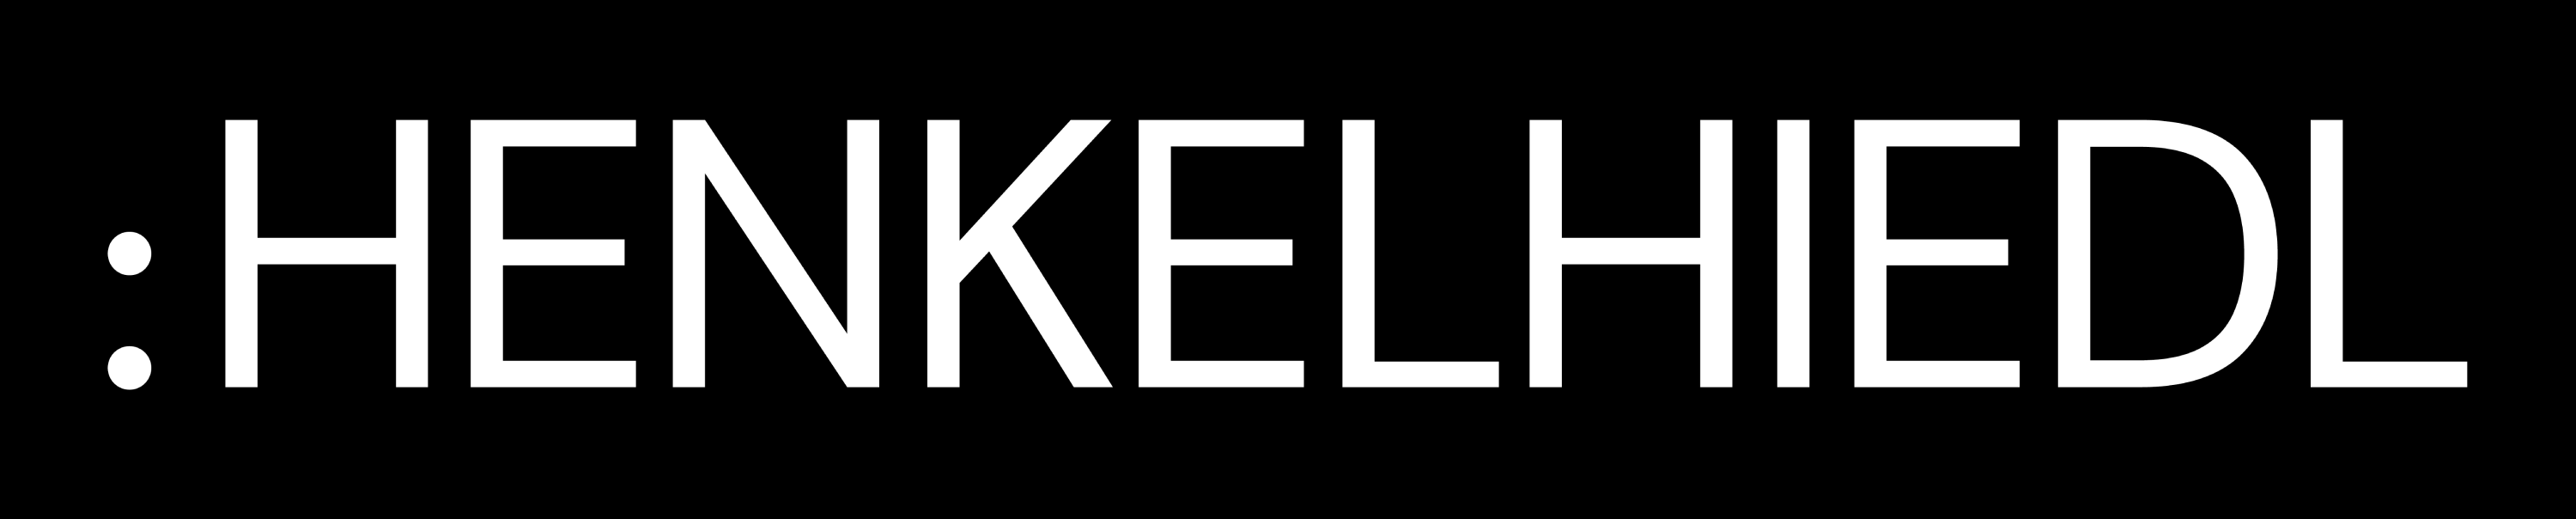 henklehiedl logo (1)